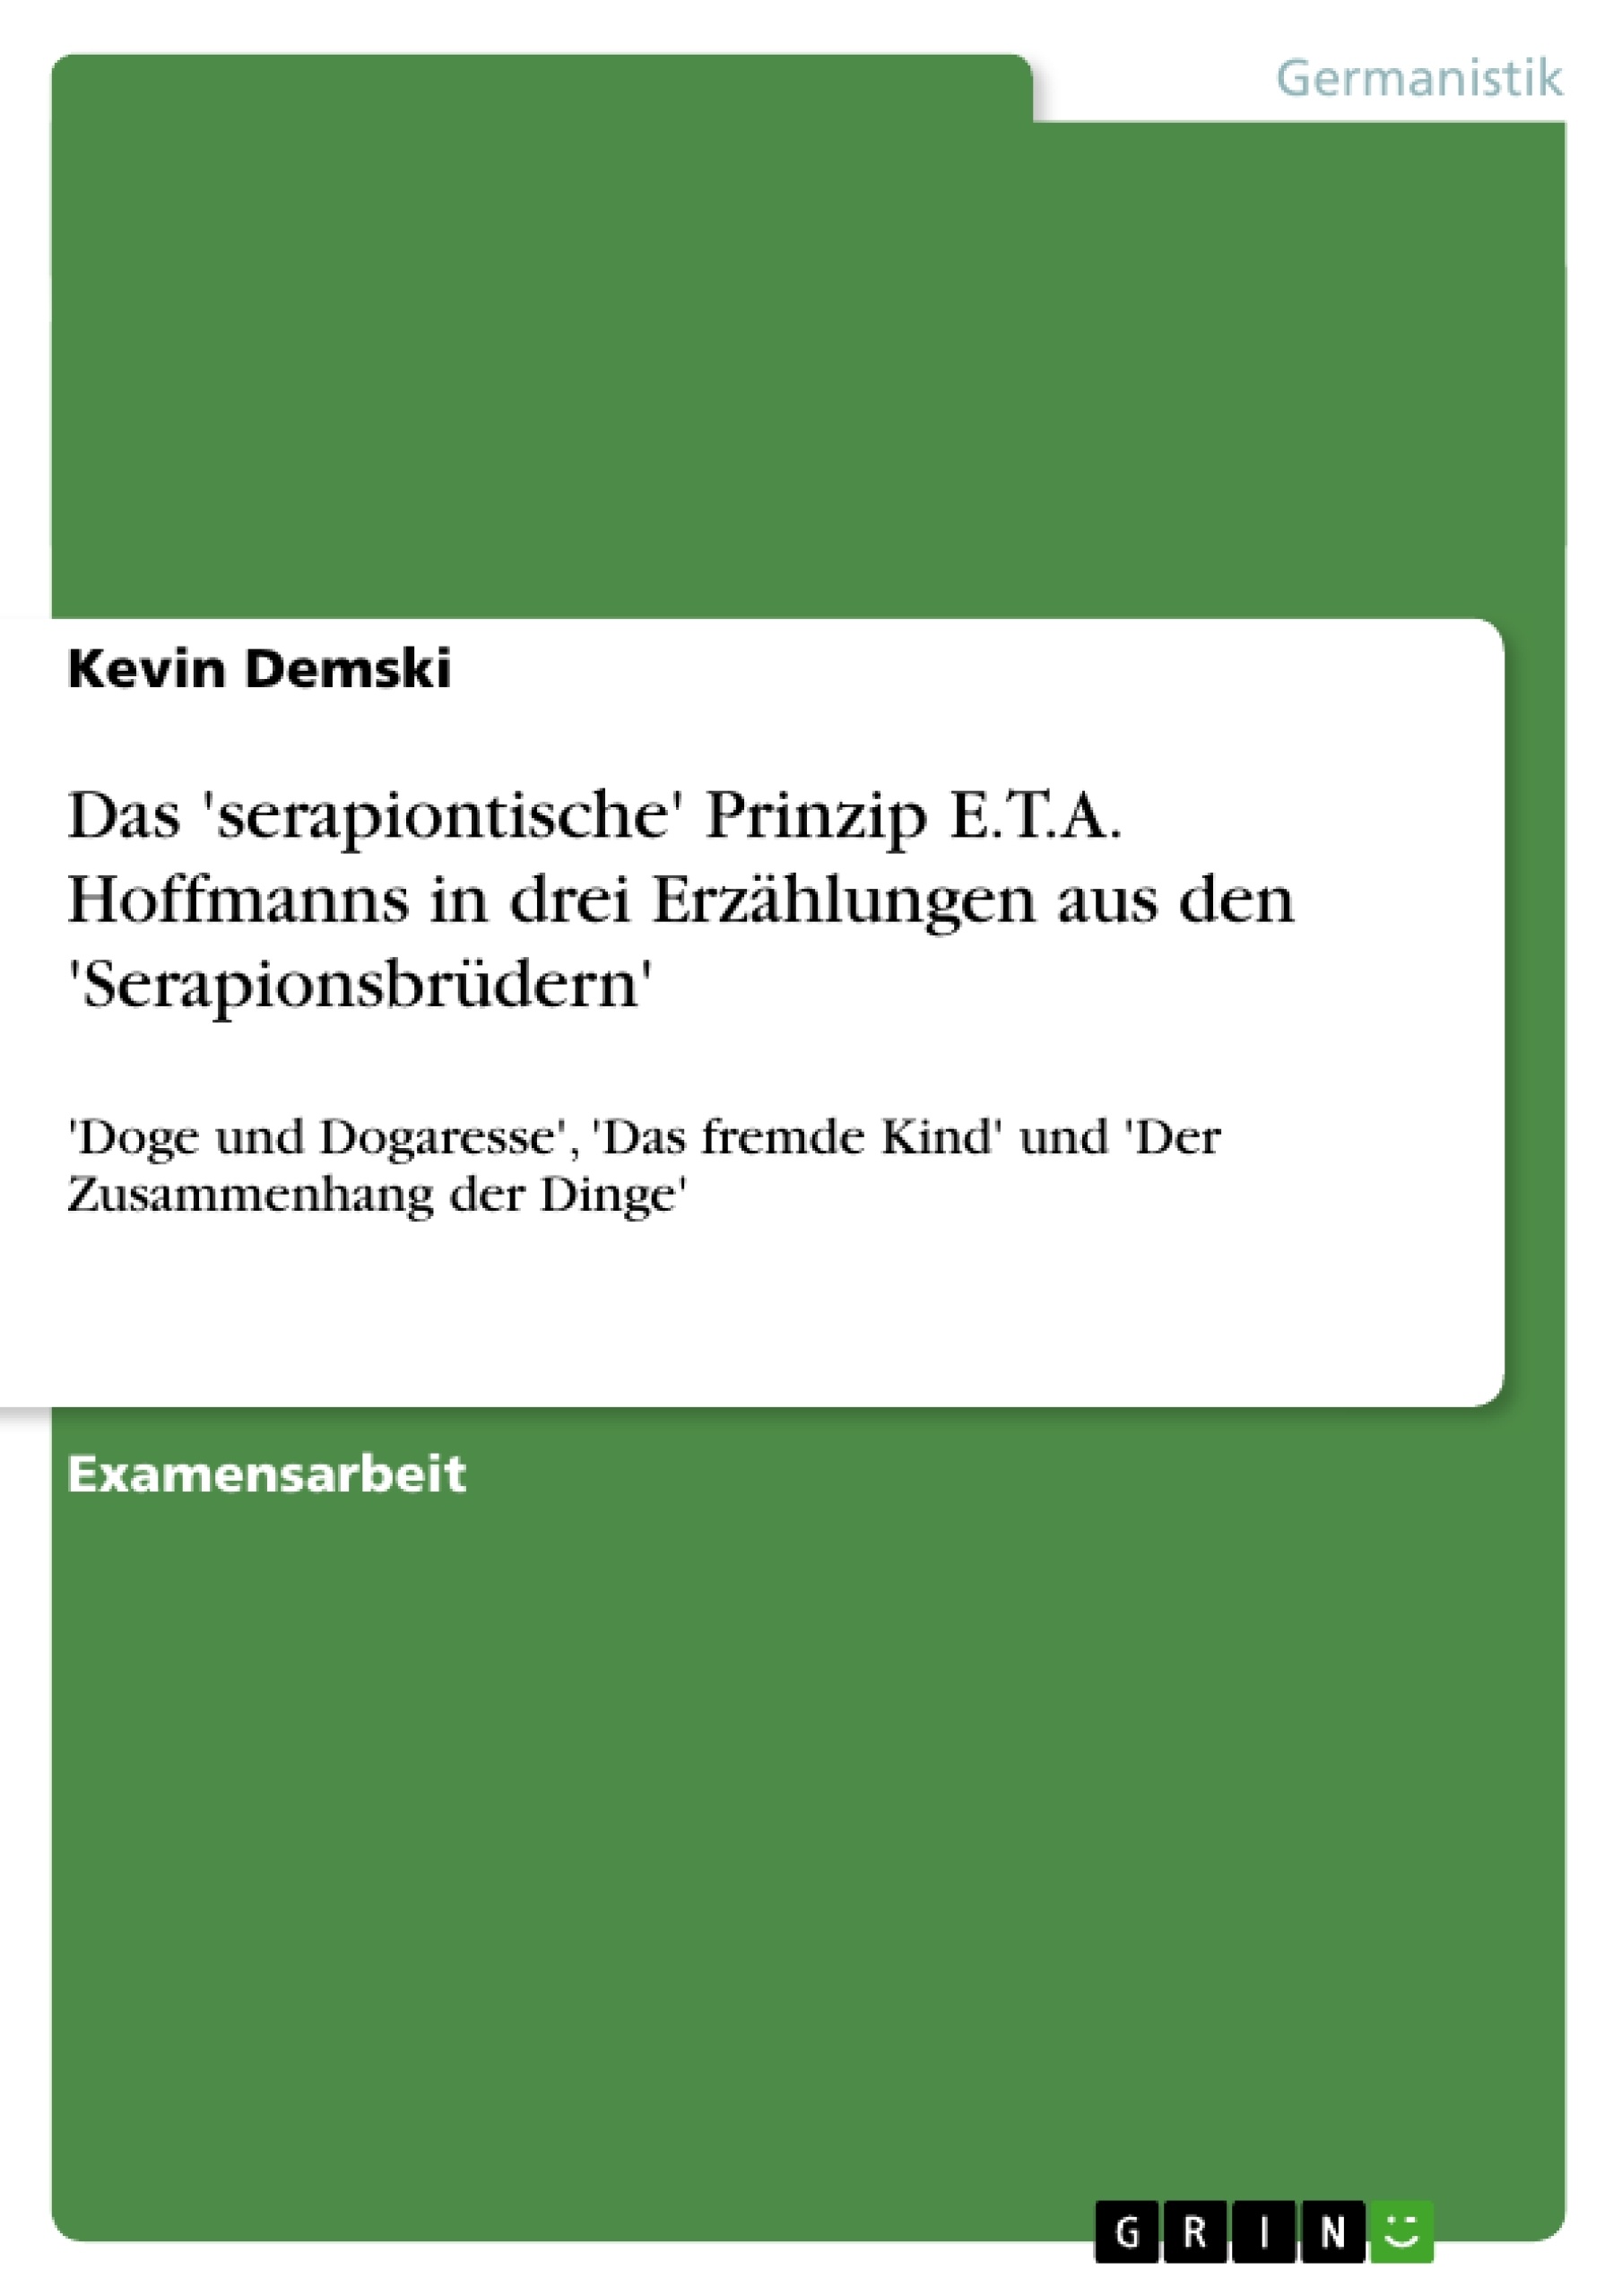 Título: Das 'serapiontische' Prinzip E.T.A. Hoffmanns in drei Erzählungen aus den 'Serapionsbrüdern'